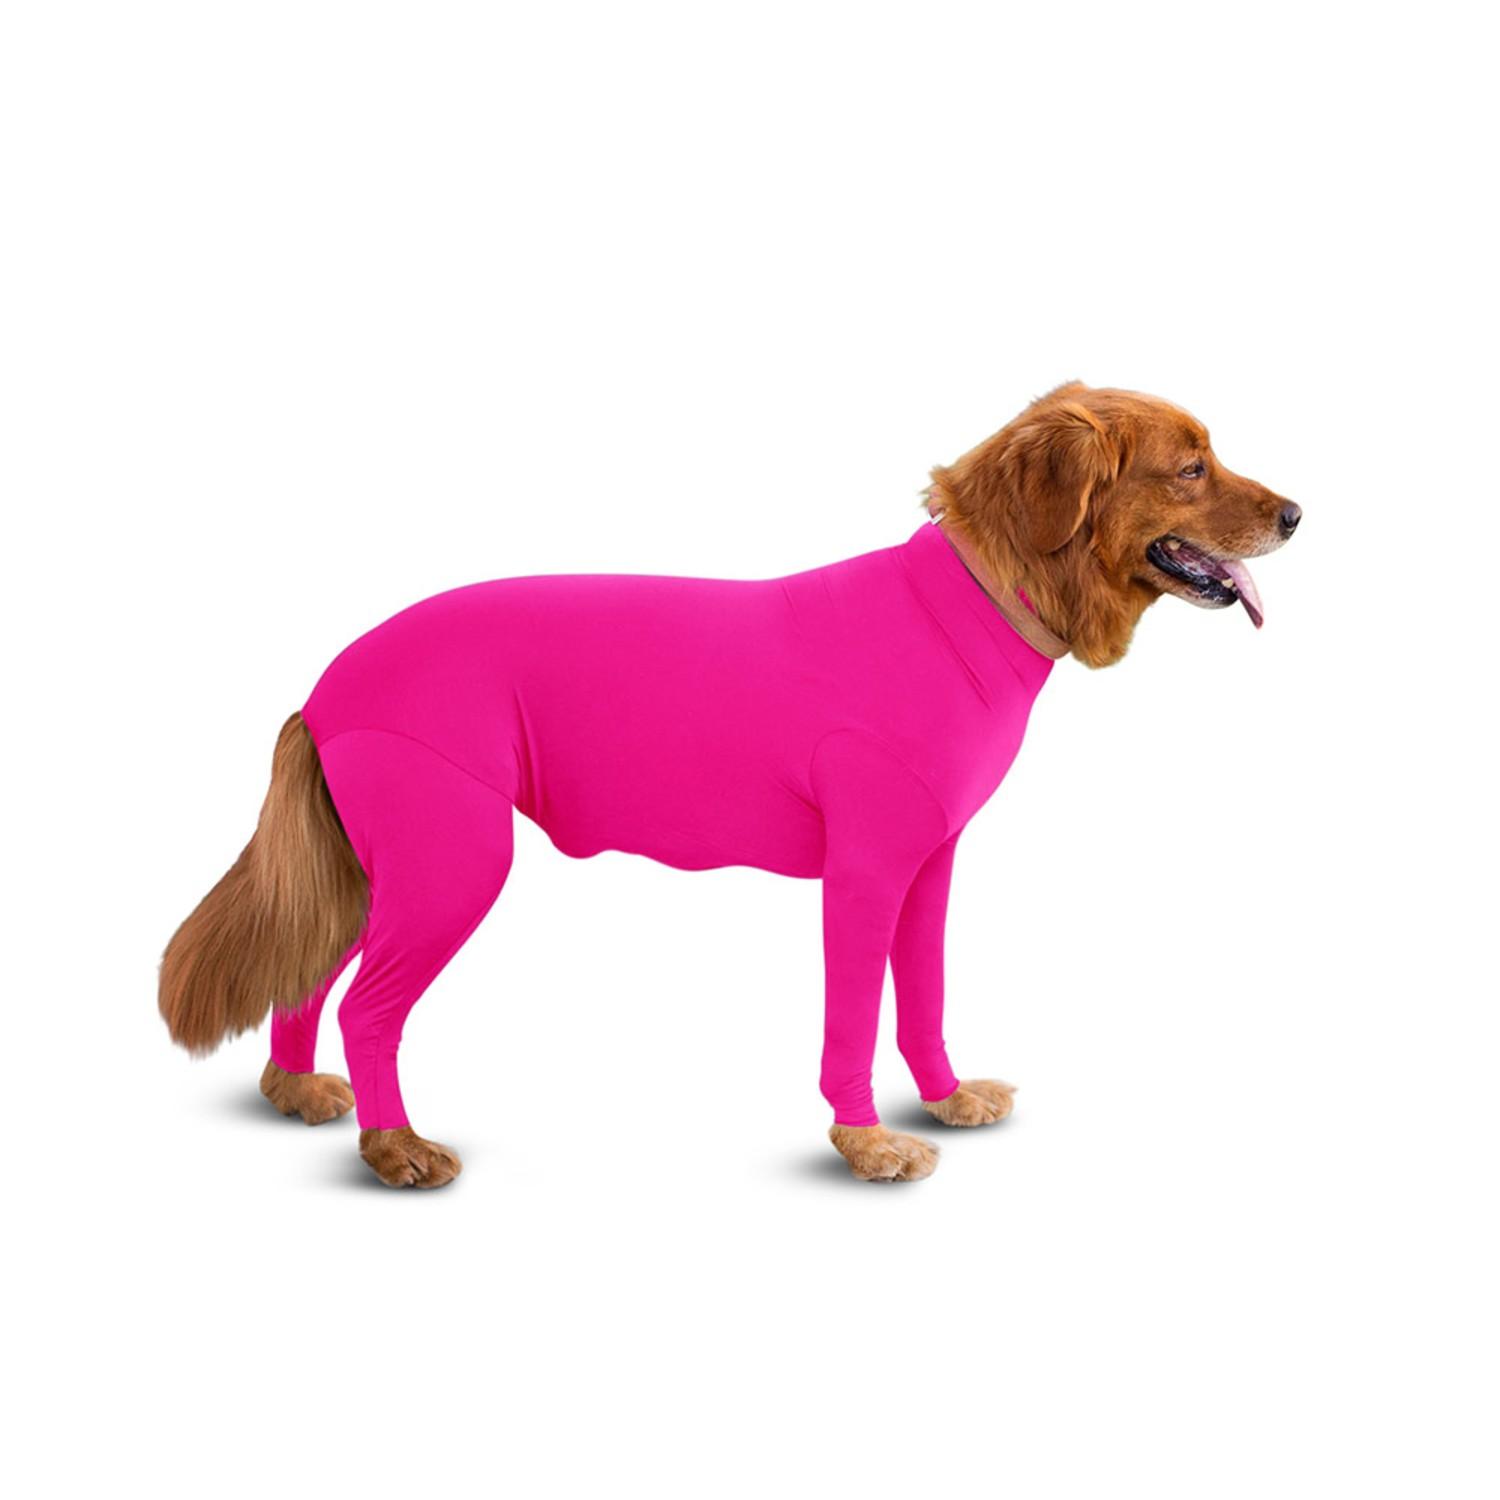 Shed Defender Original Full Body Dog Onesie - Hot Pink